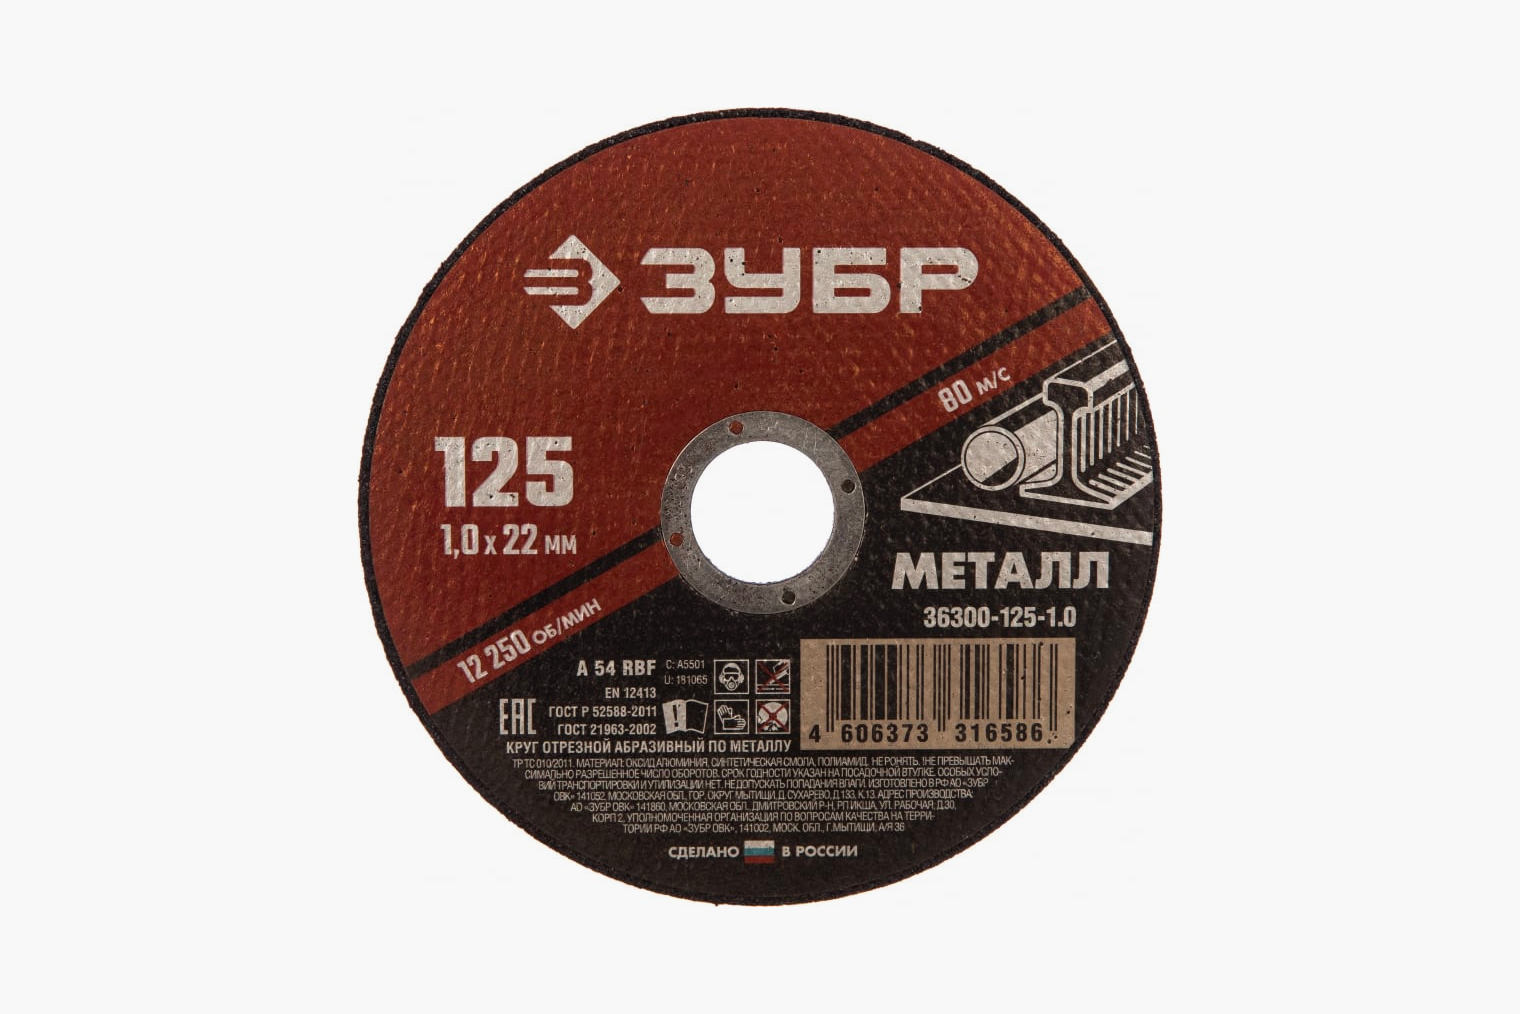 Такой диск по металлу нужен для работы с бочкой. Источник: vseinstrumenti.ru